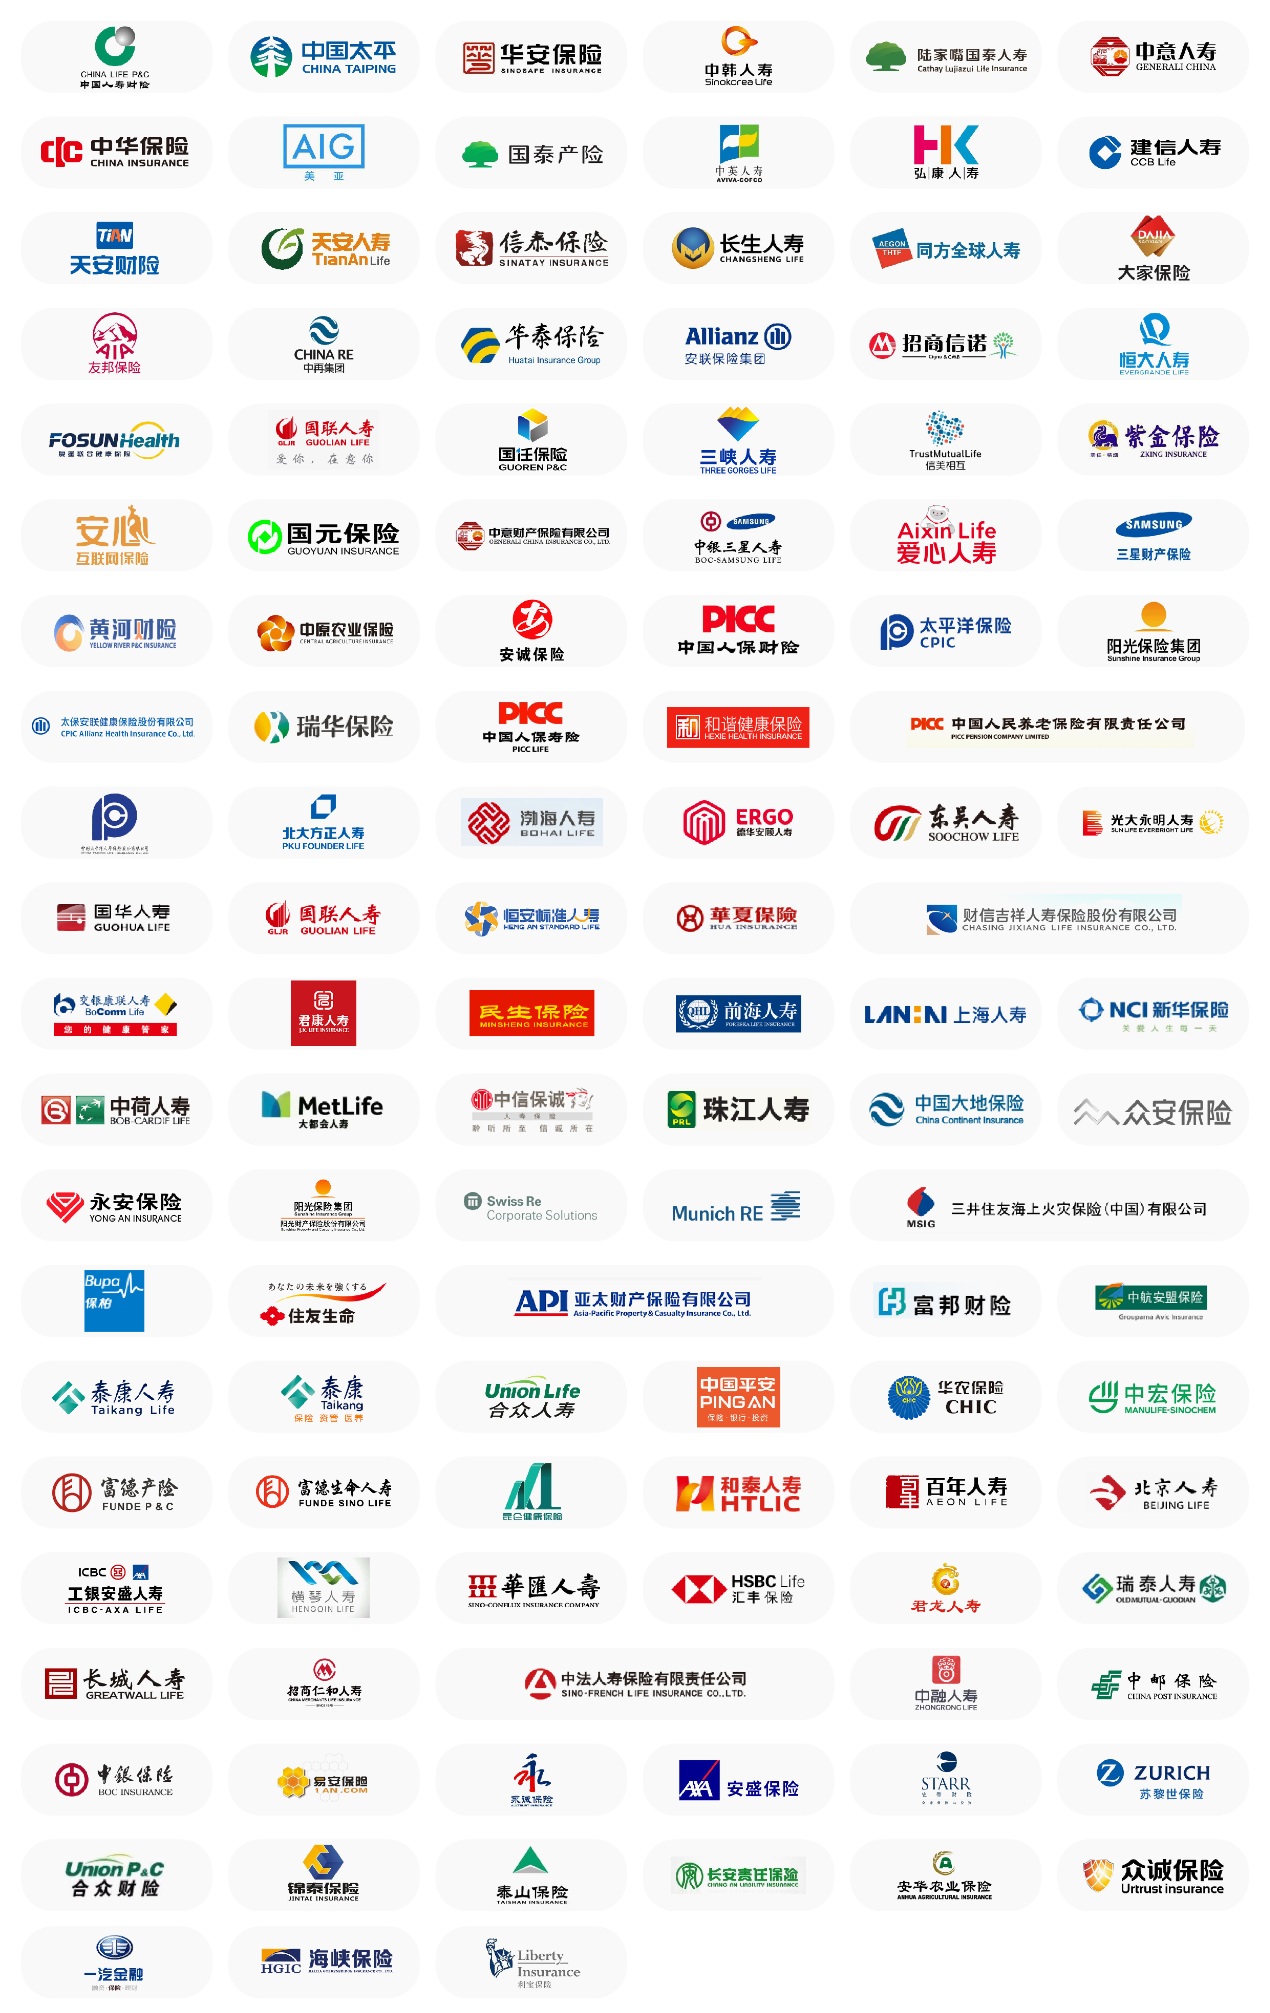 2021（第九届）中国保险产业国际峰会